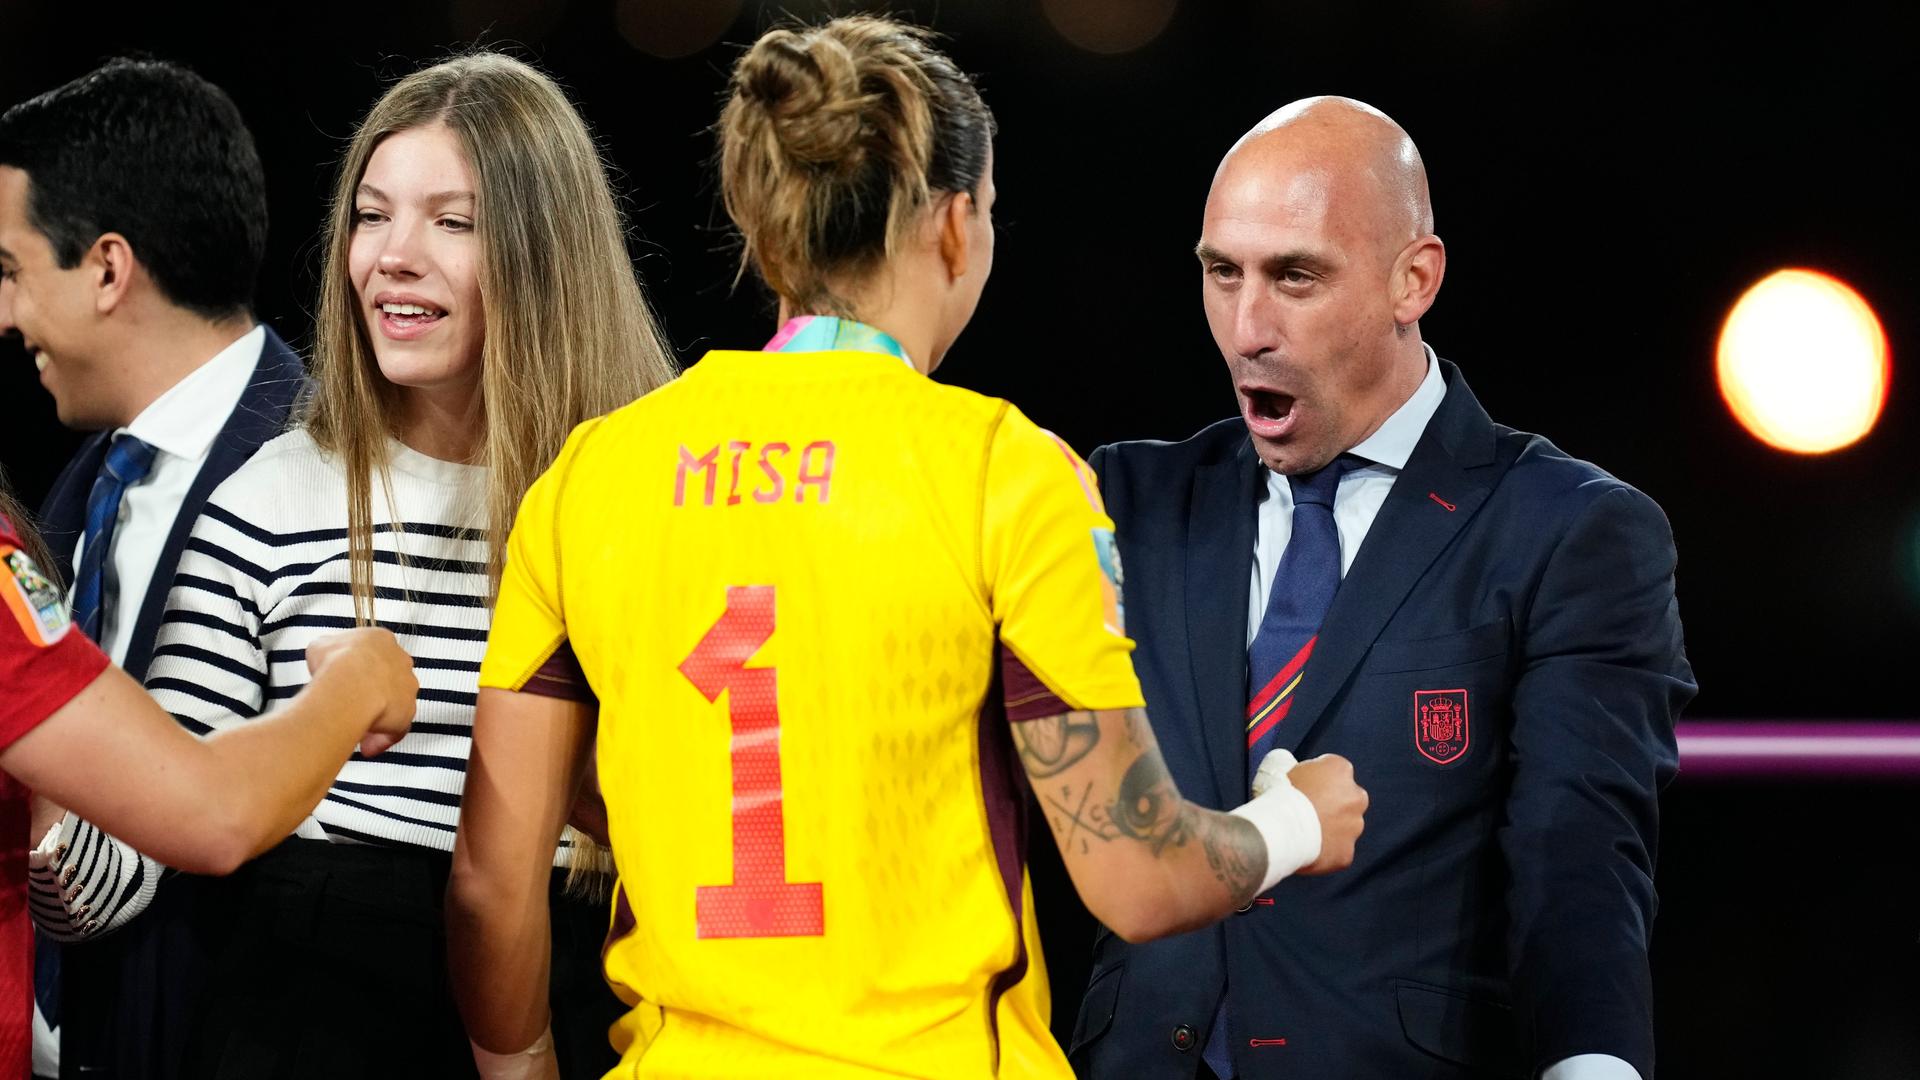 Der spanische Fußballverbandchef Luis Rubiales möchte eine Spielerin nach dem Gewinn des WM-Titels umarmen.